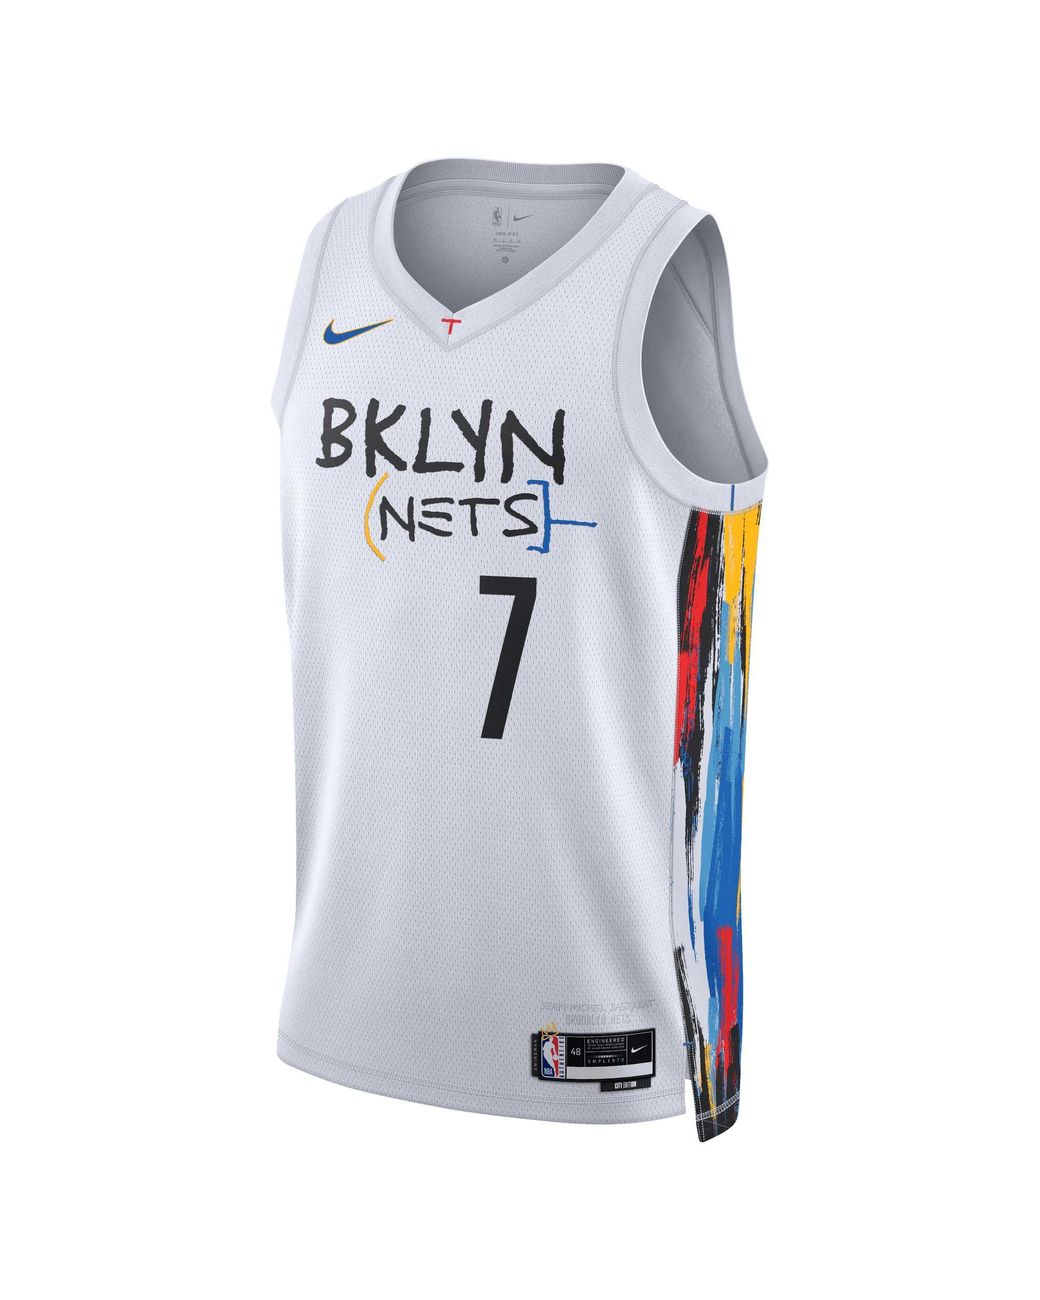 Brooklyn Nets - 2020-21 Nike Swingman Blank City Edition Jersey sz 48  (Large)